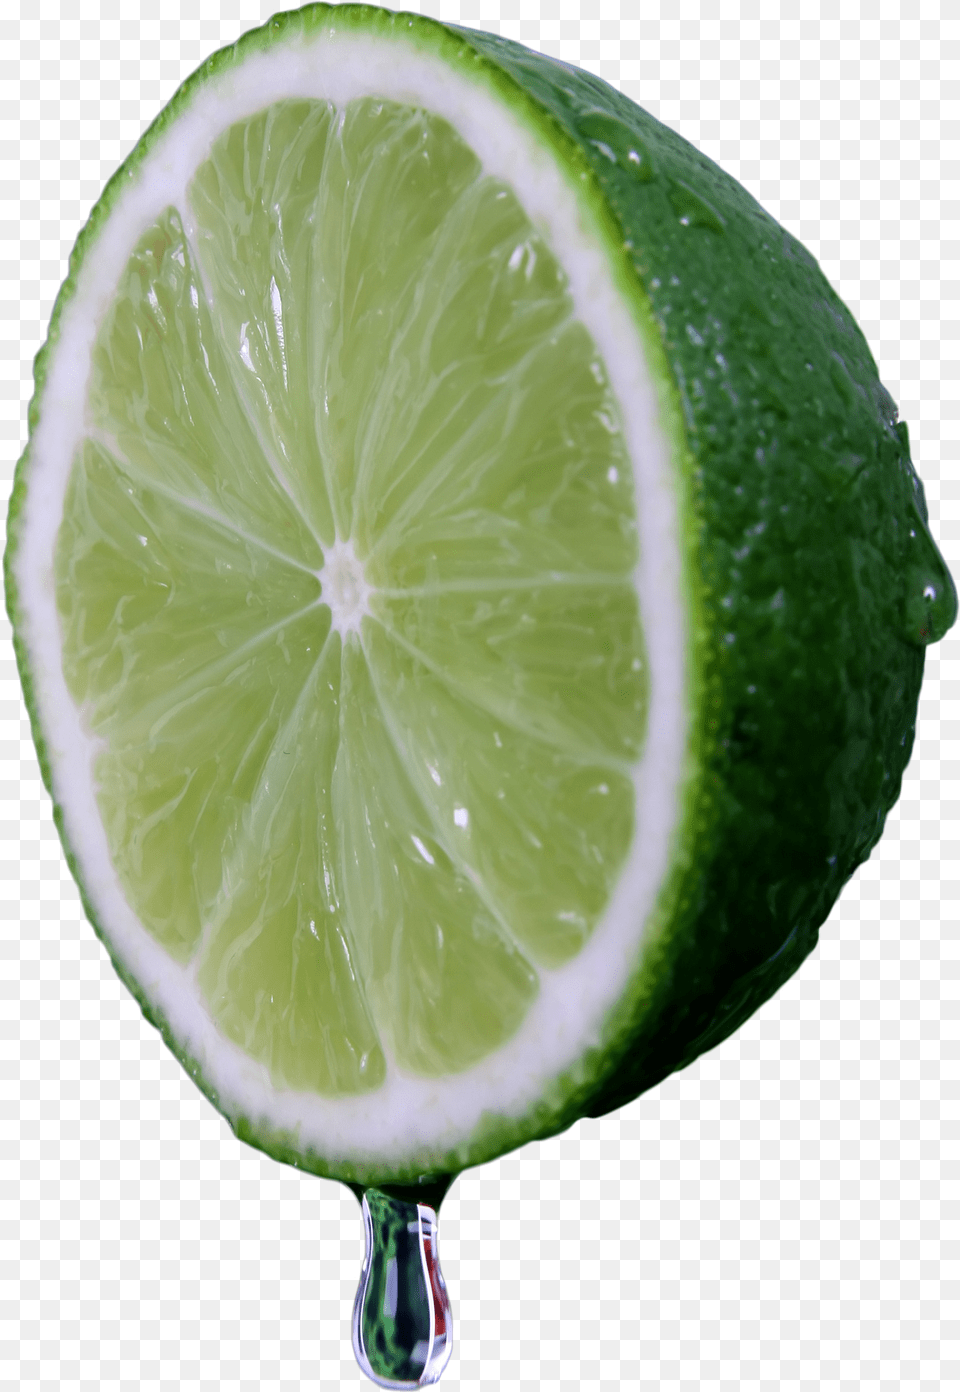 Download Lime Halved Image For Water Droplet, Citrus Fruit, Food, Fruit, Plant Free Transparent Png